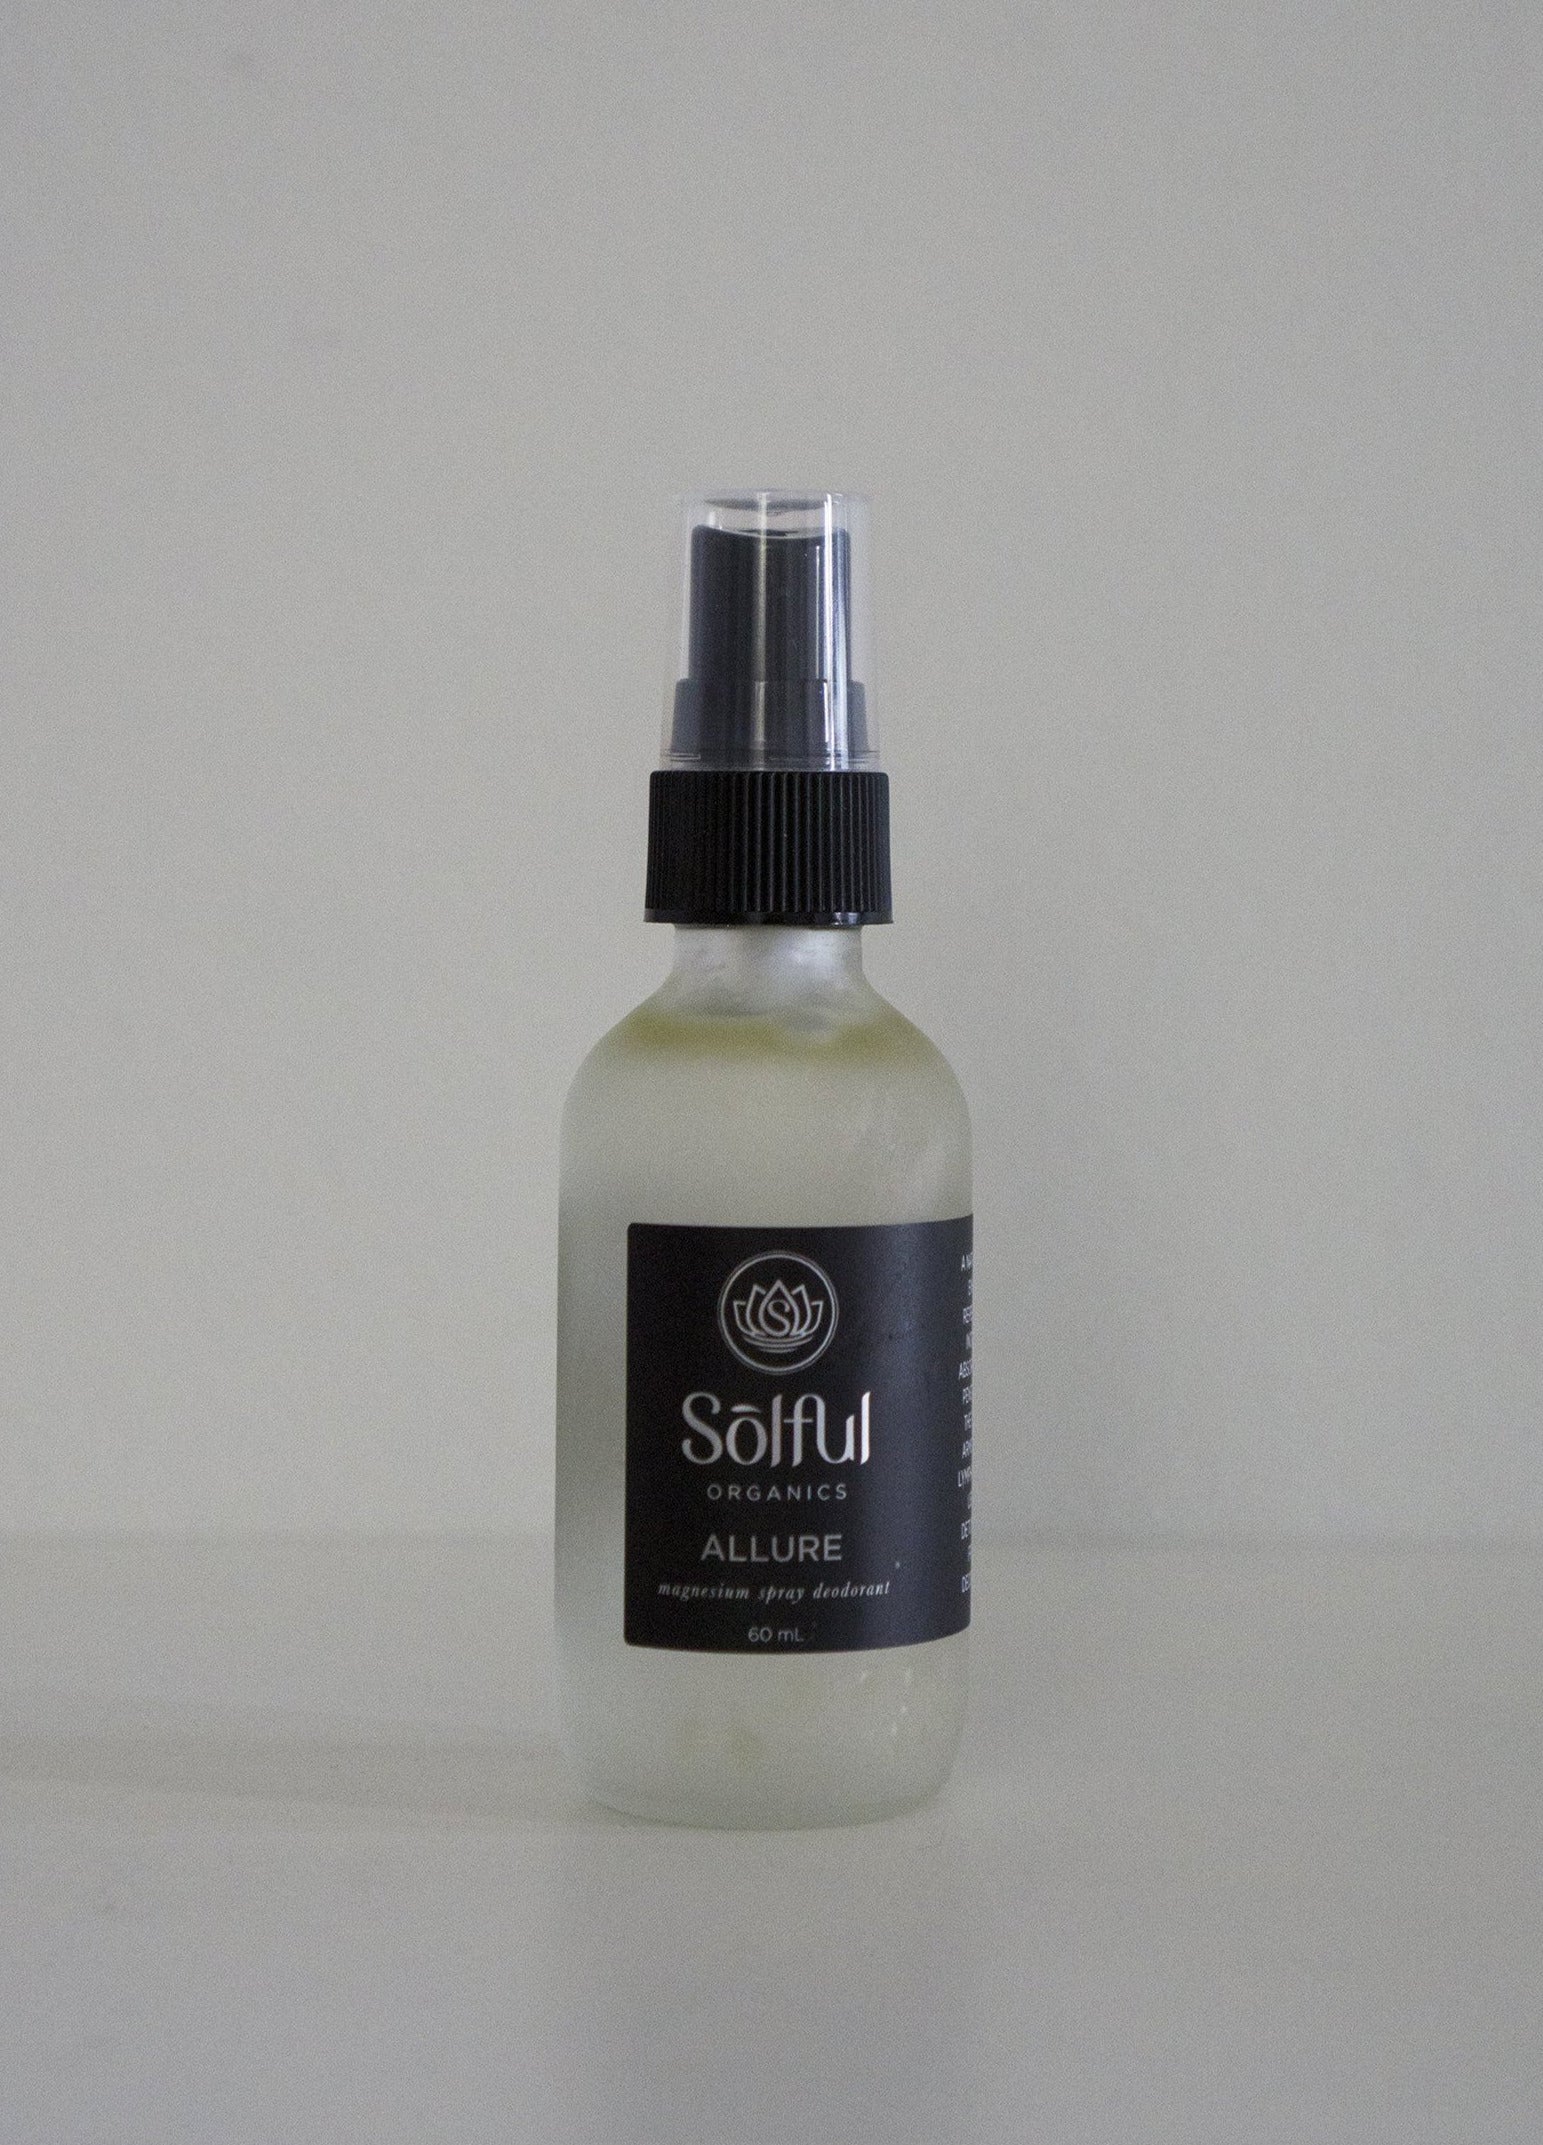 Solful Organics Allure Men's Magnesium Spray Deodorant